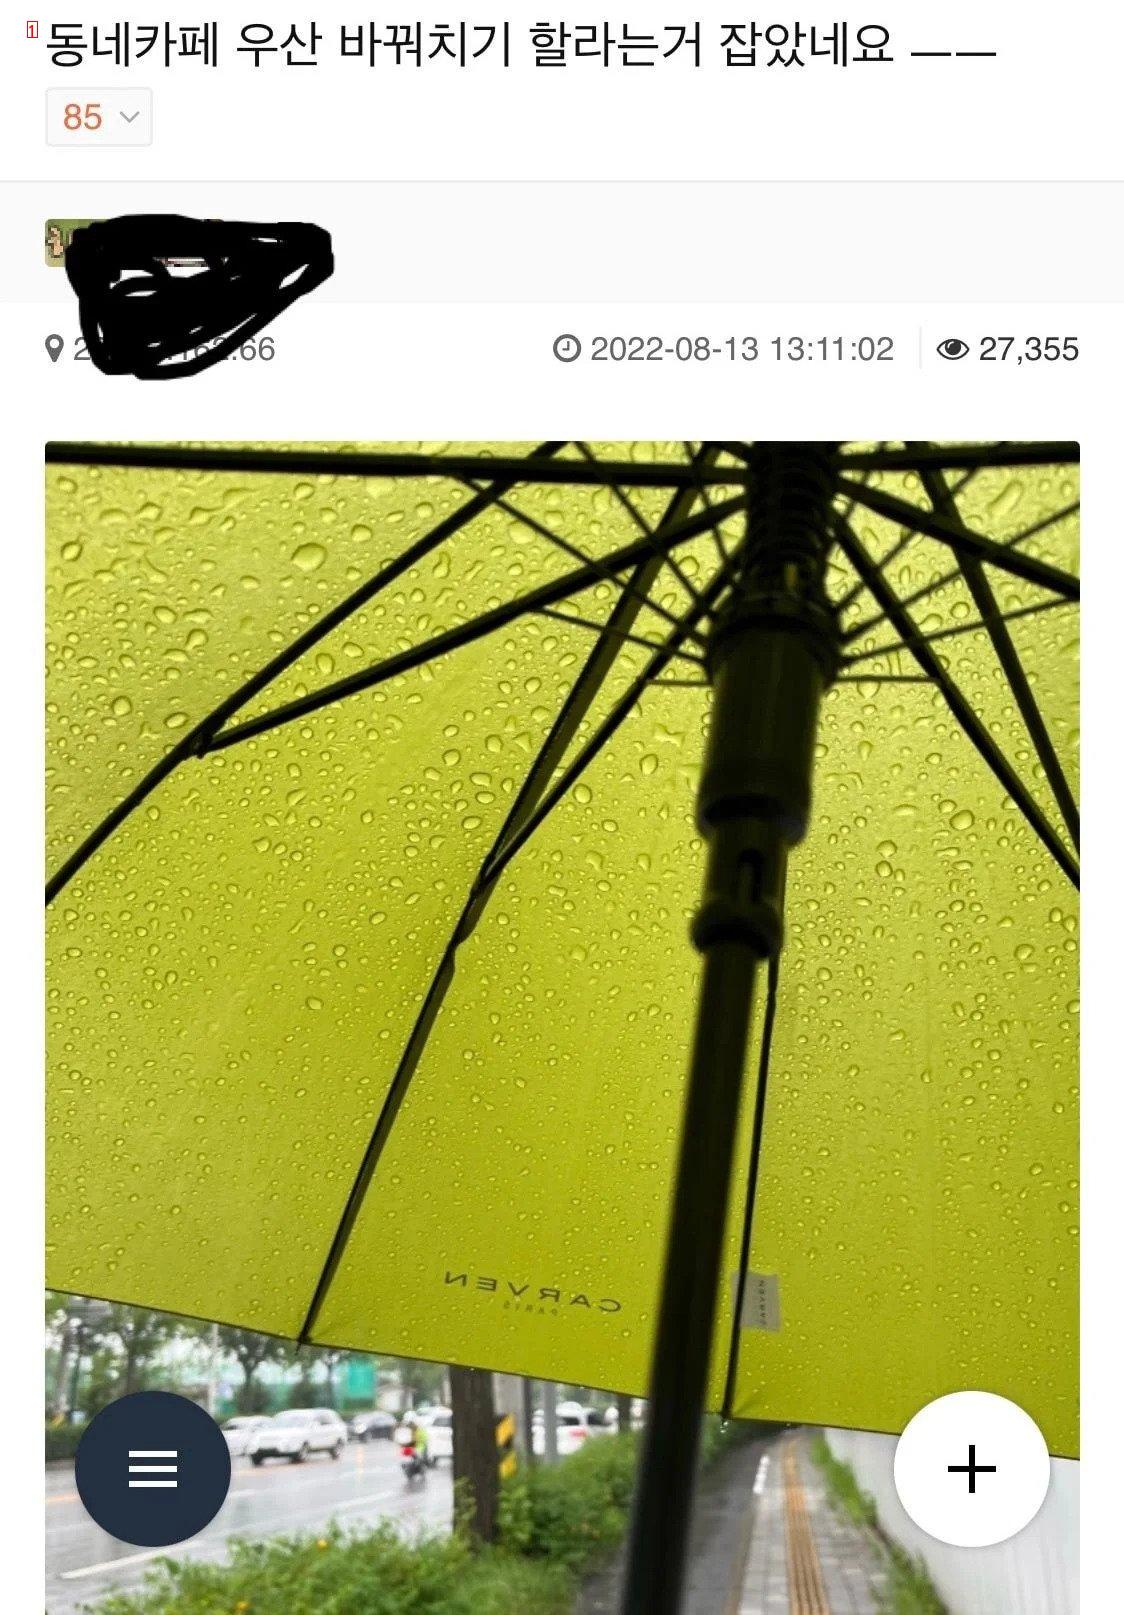 店舗共用の傘入れに傘をさすのを嫌がる理由